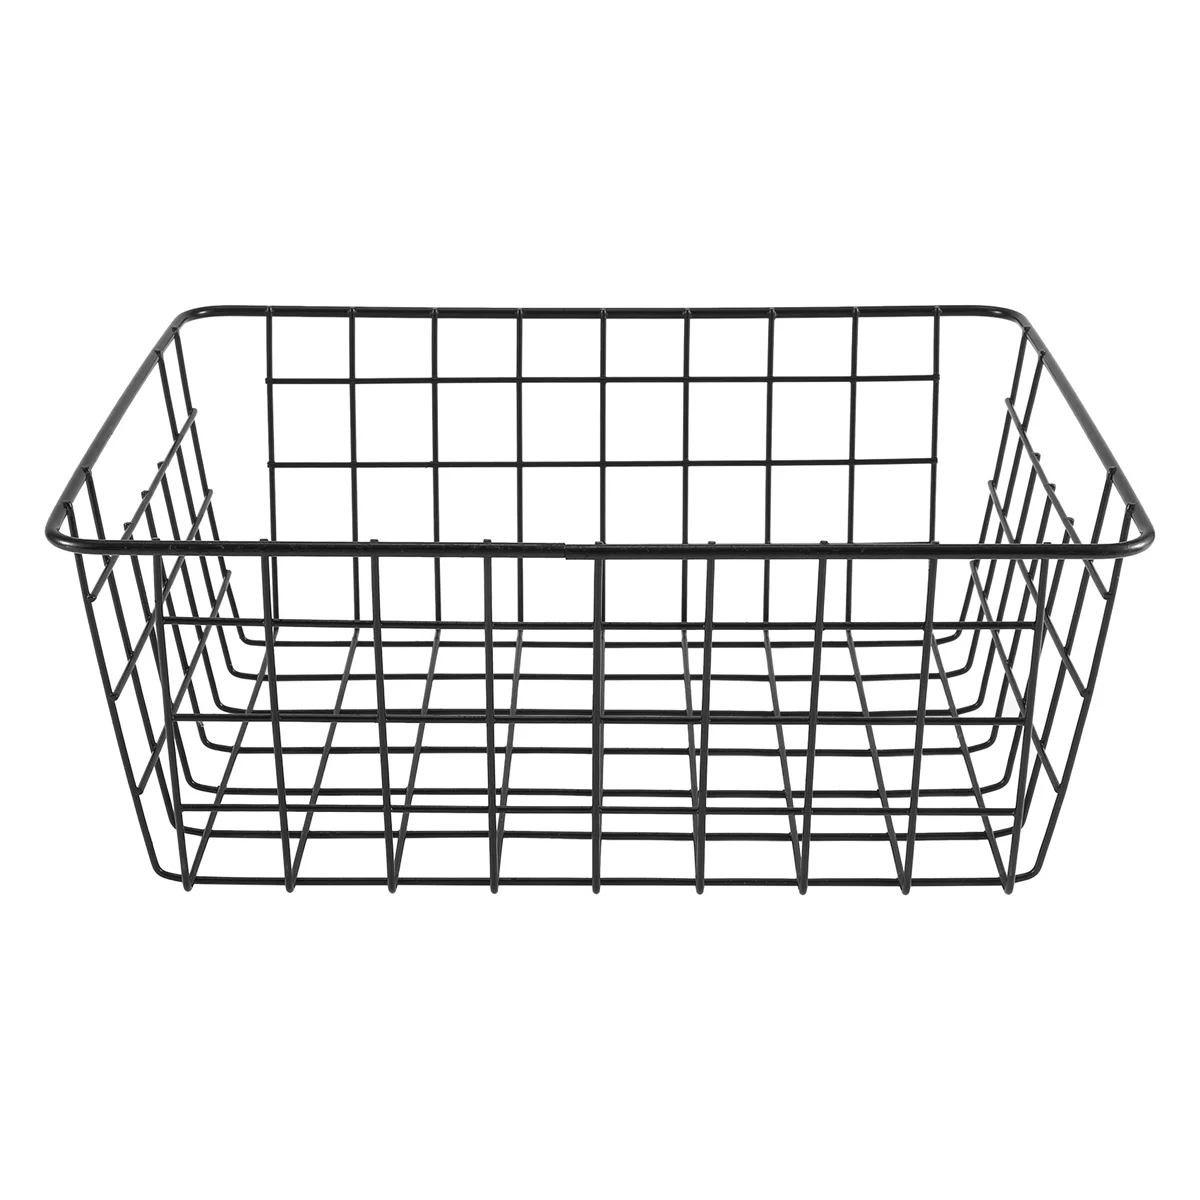 

Hollow Iron Wired Basket, Storage Baskets Metal Basket Without Interlining Bathroom Kitchen Organizer Black